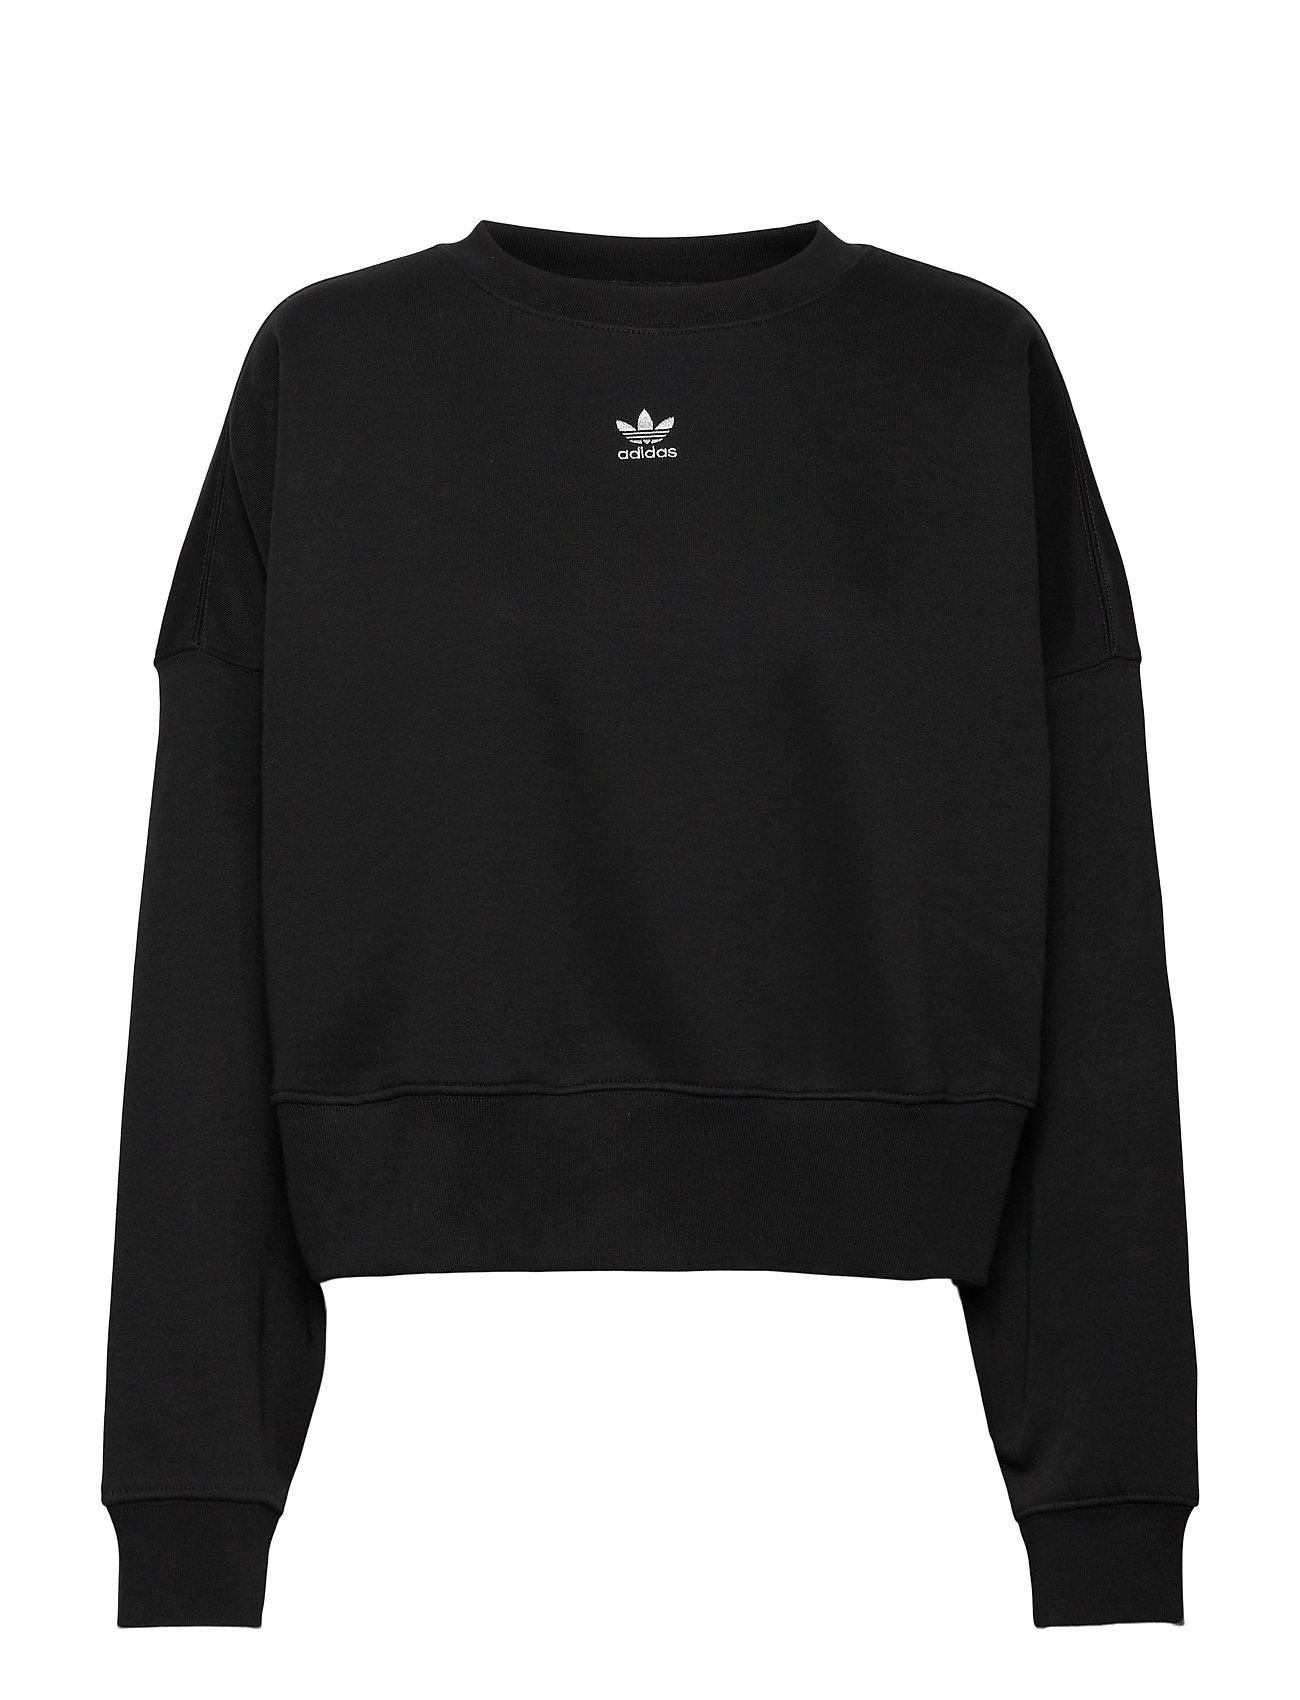 Adicolor Essentials Fleece Sweatshirt W Svetari Collegepaita Musta Adidas Originals, adidas Originals